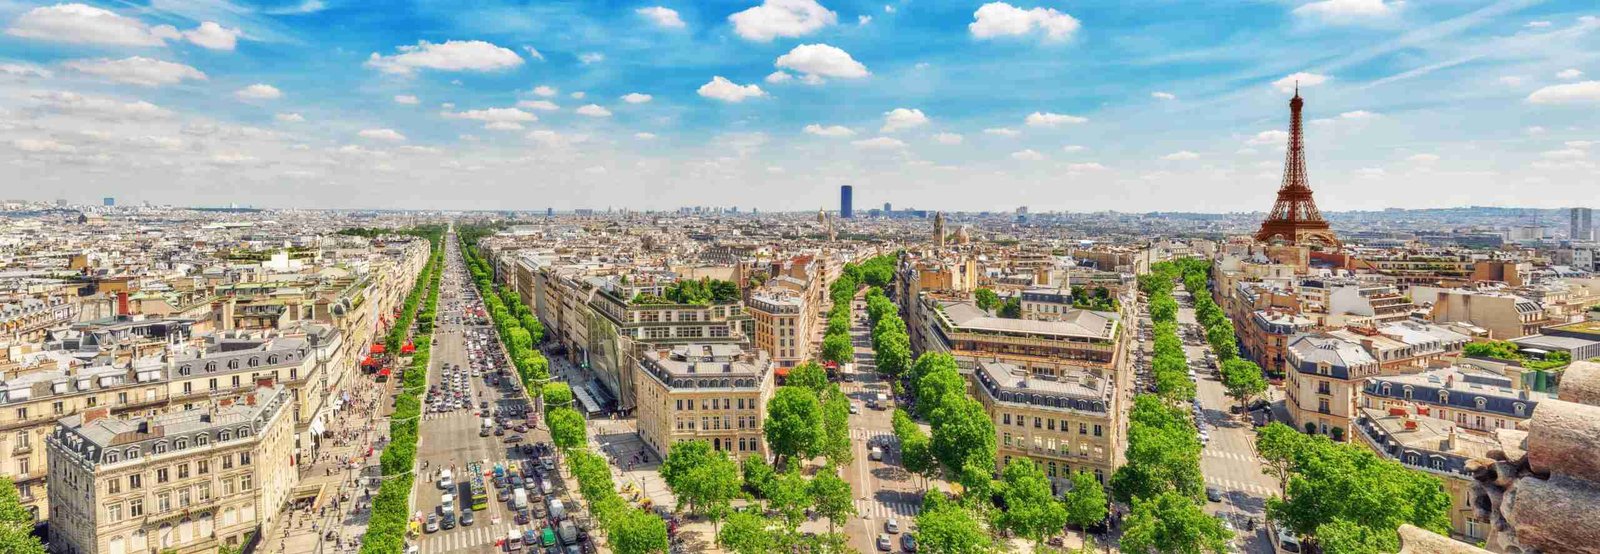 paris tourist information official website